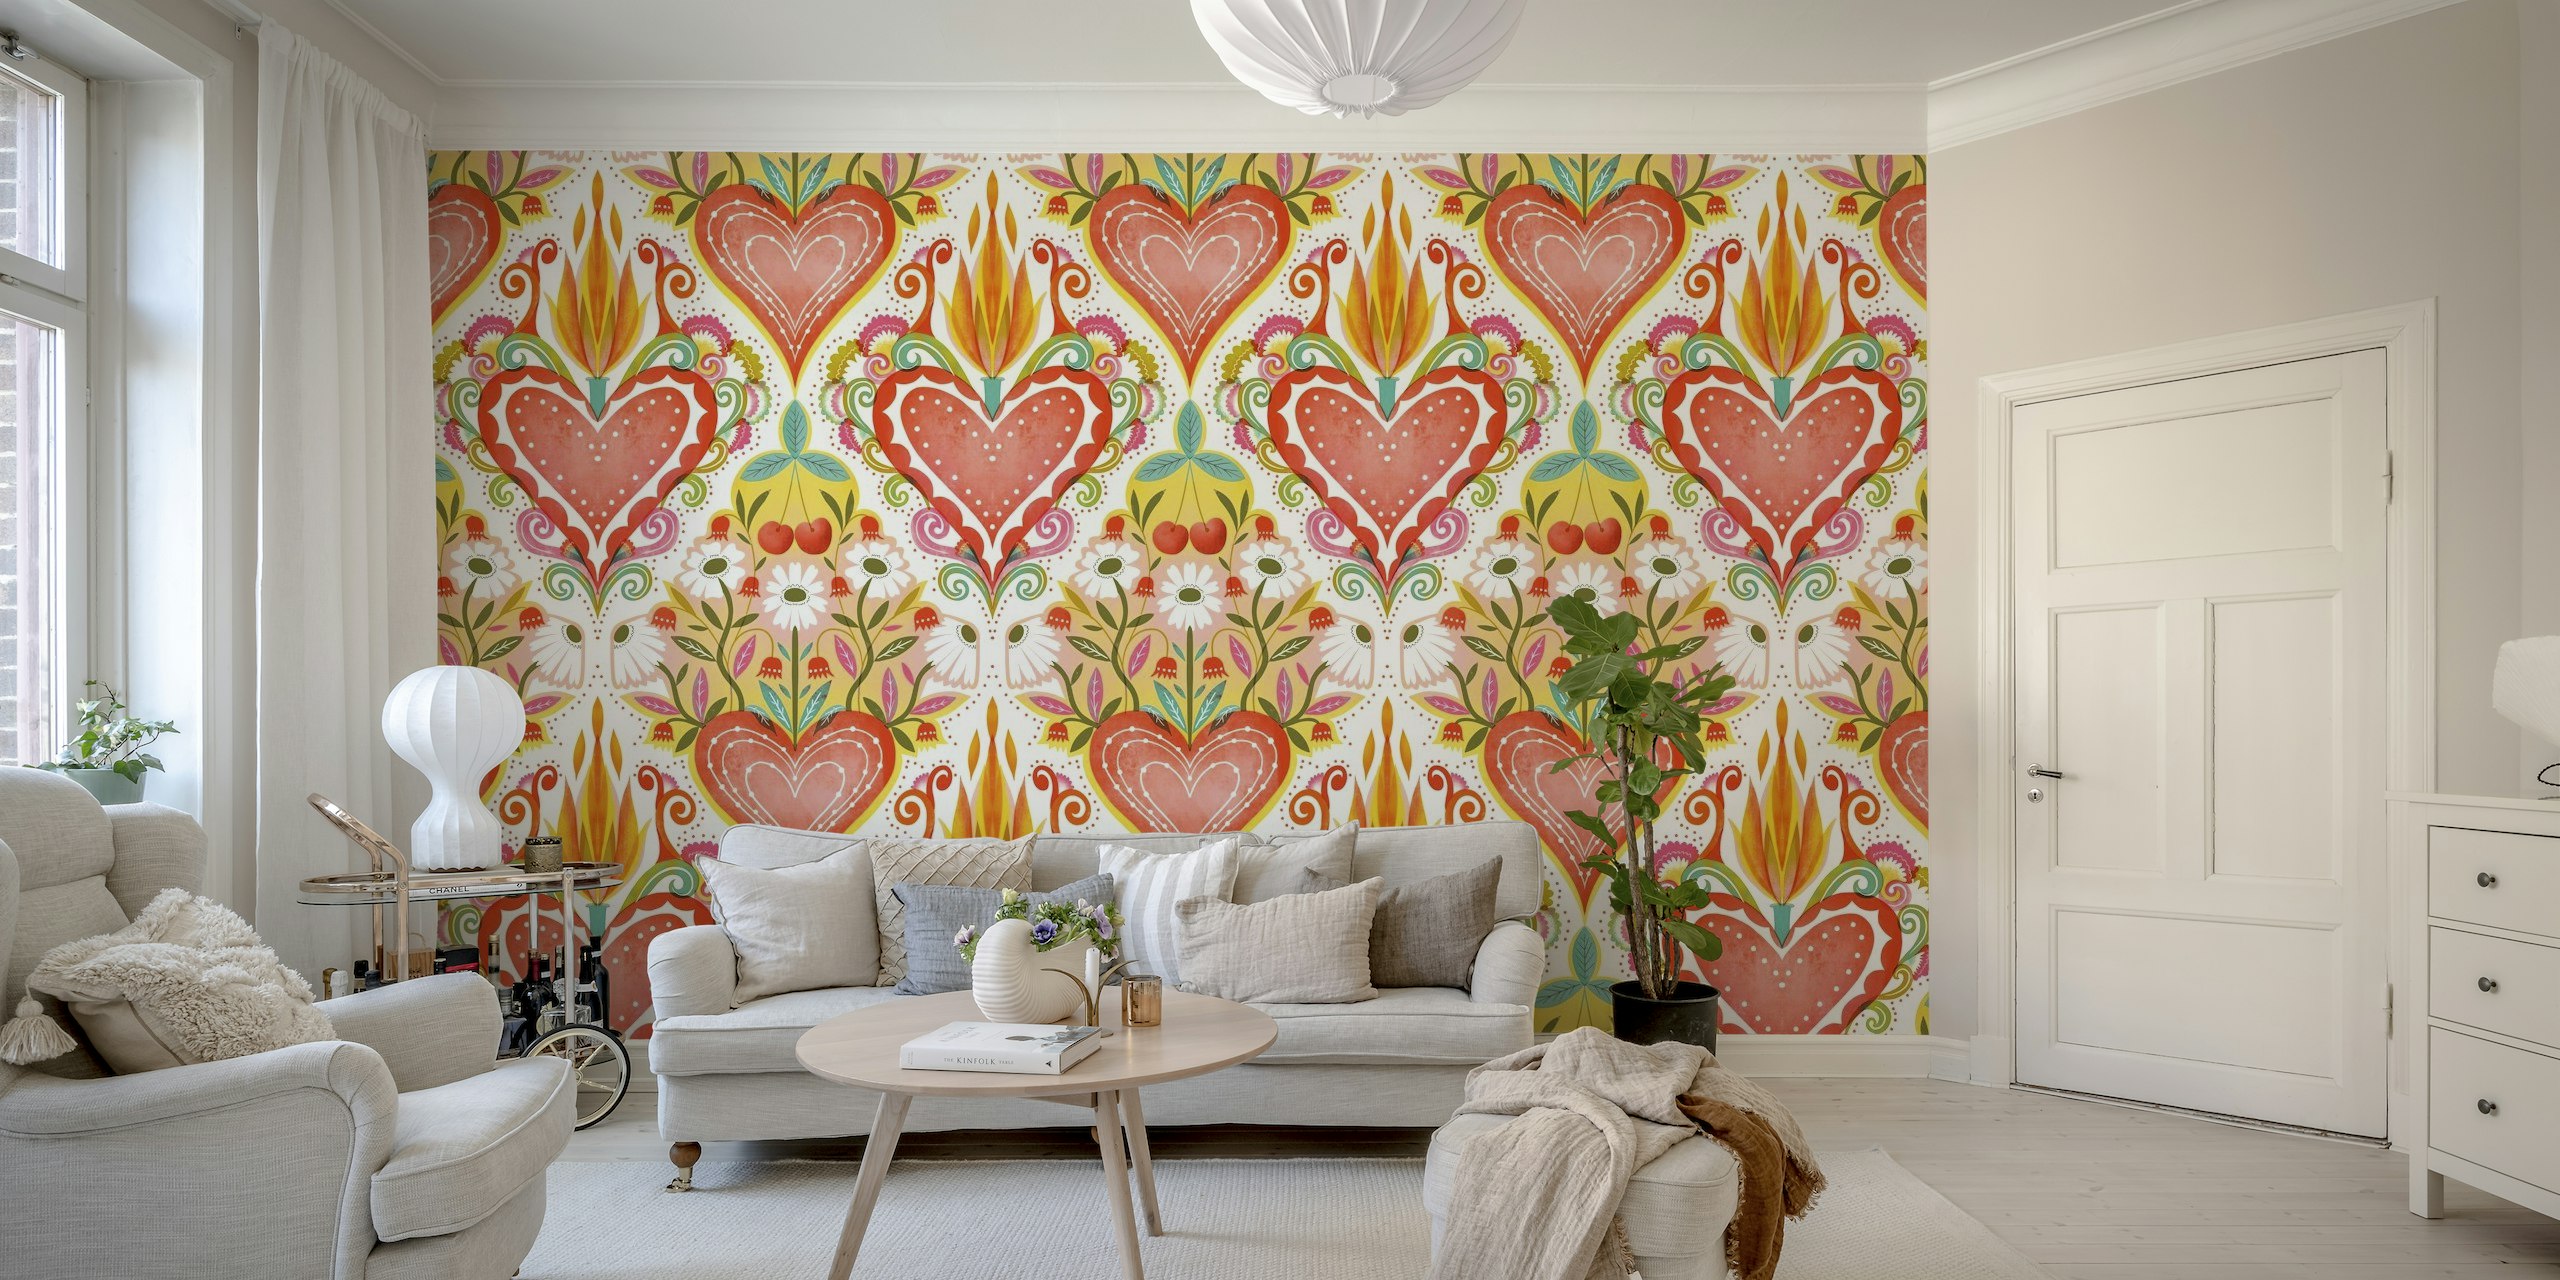 Farbenfrohes, volkstümlich inspiriertes Wandbild mit einem großen Herz mit Flammen in der Mitte und kleineren umgebenden Herzen und Blumenmustern.